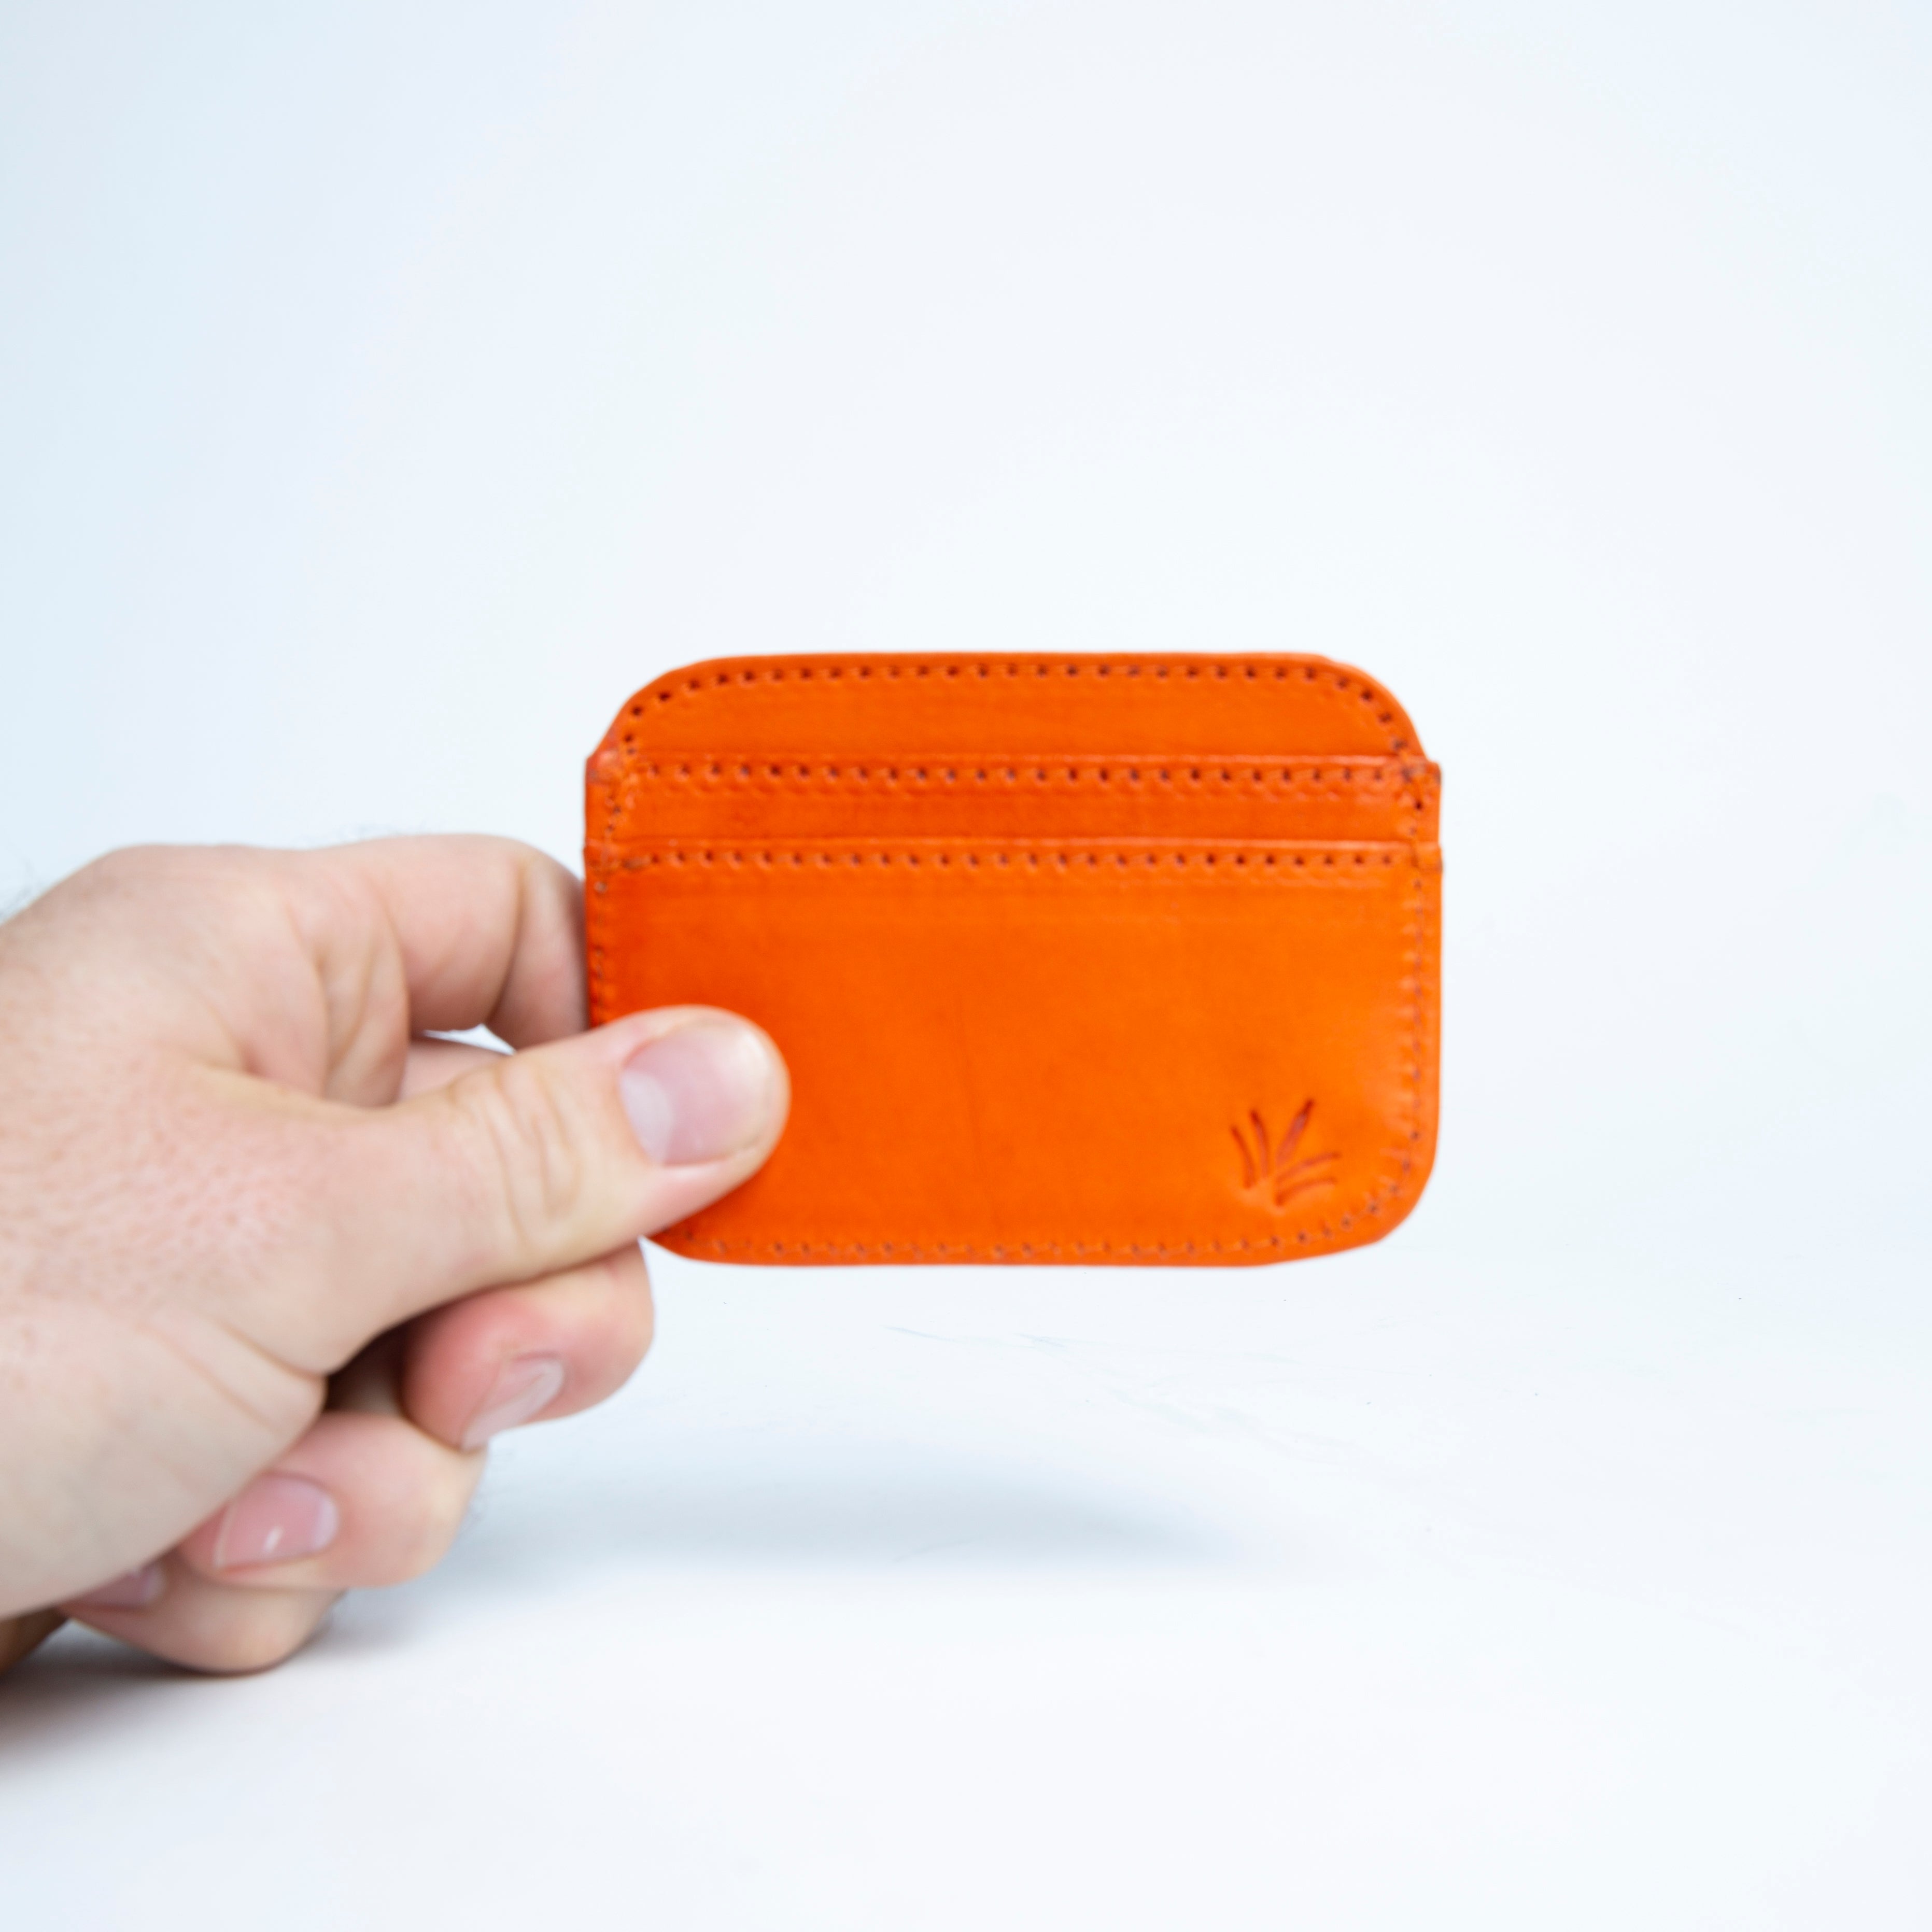 Orange Men's Wallet 